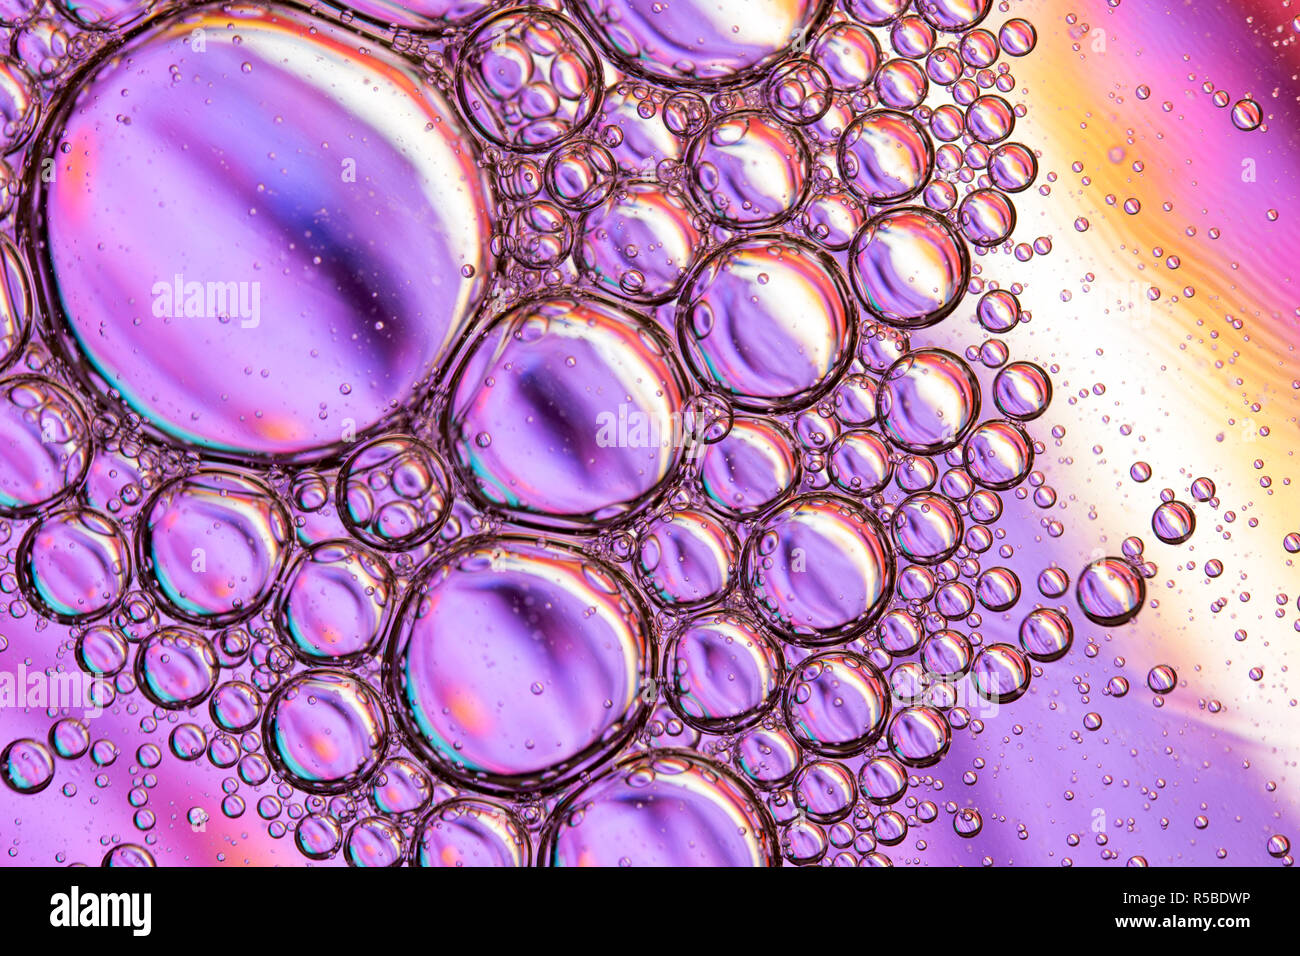 Zusammenfassung Hintergrund der Nahaufnahme Detail in pflanzlichem Öl Tröpfchen/Blasen auf der Oberfläche des Wassers mit einem bunten Hintergrund Stockfoto